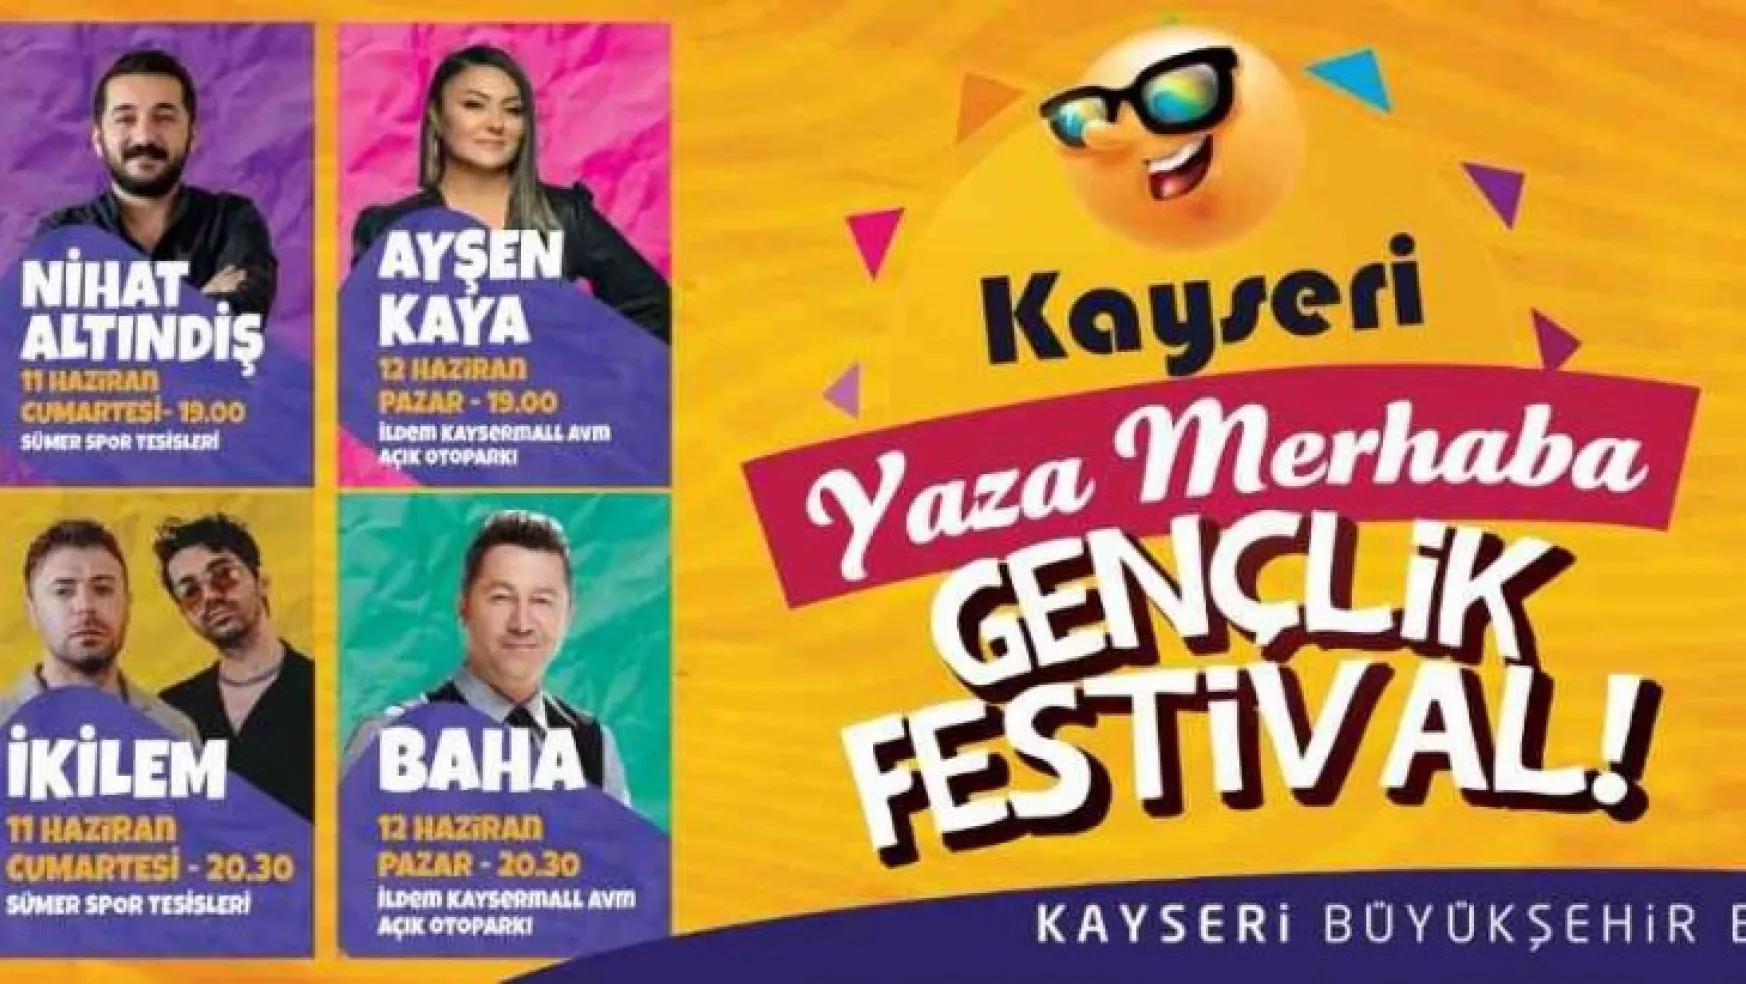 Büyükşehir'in 'Yaza Merhaba Gençlik Festivali' başlıyor